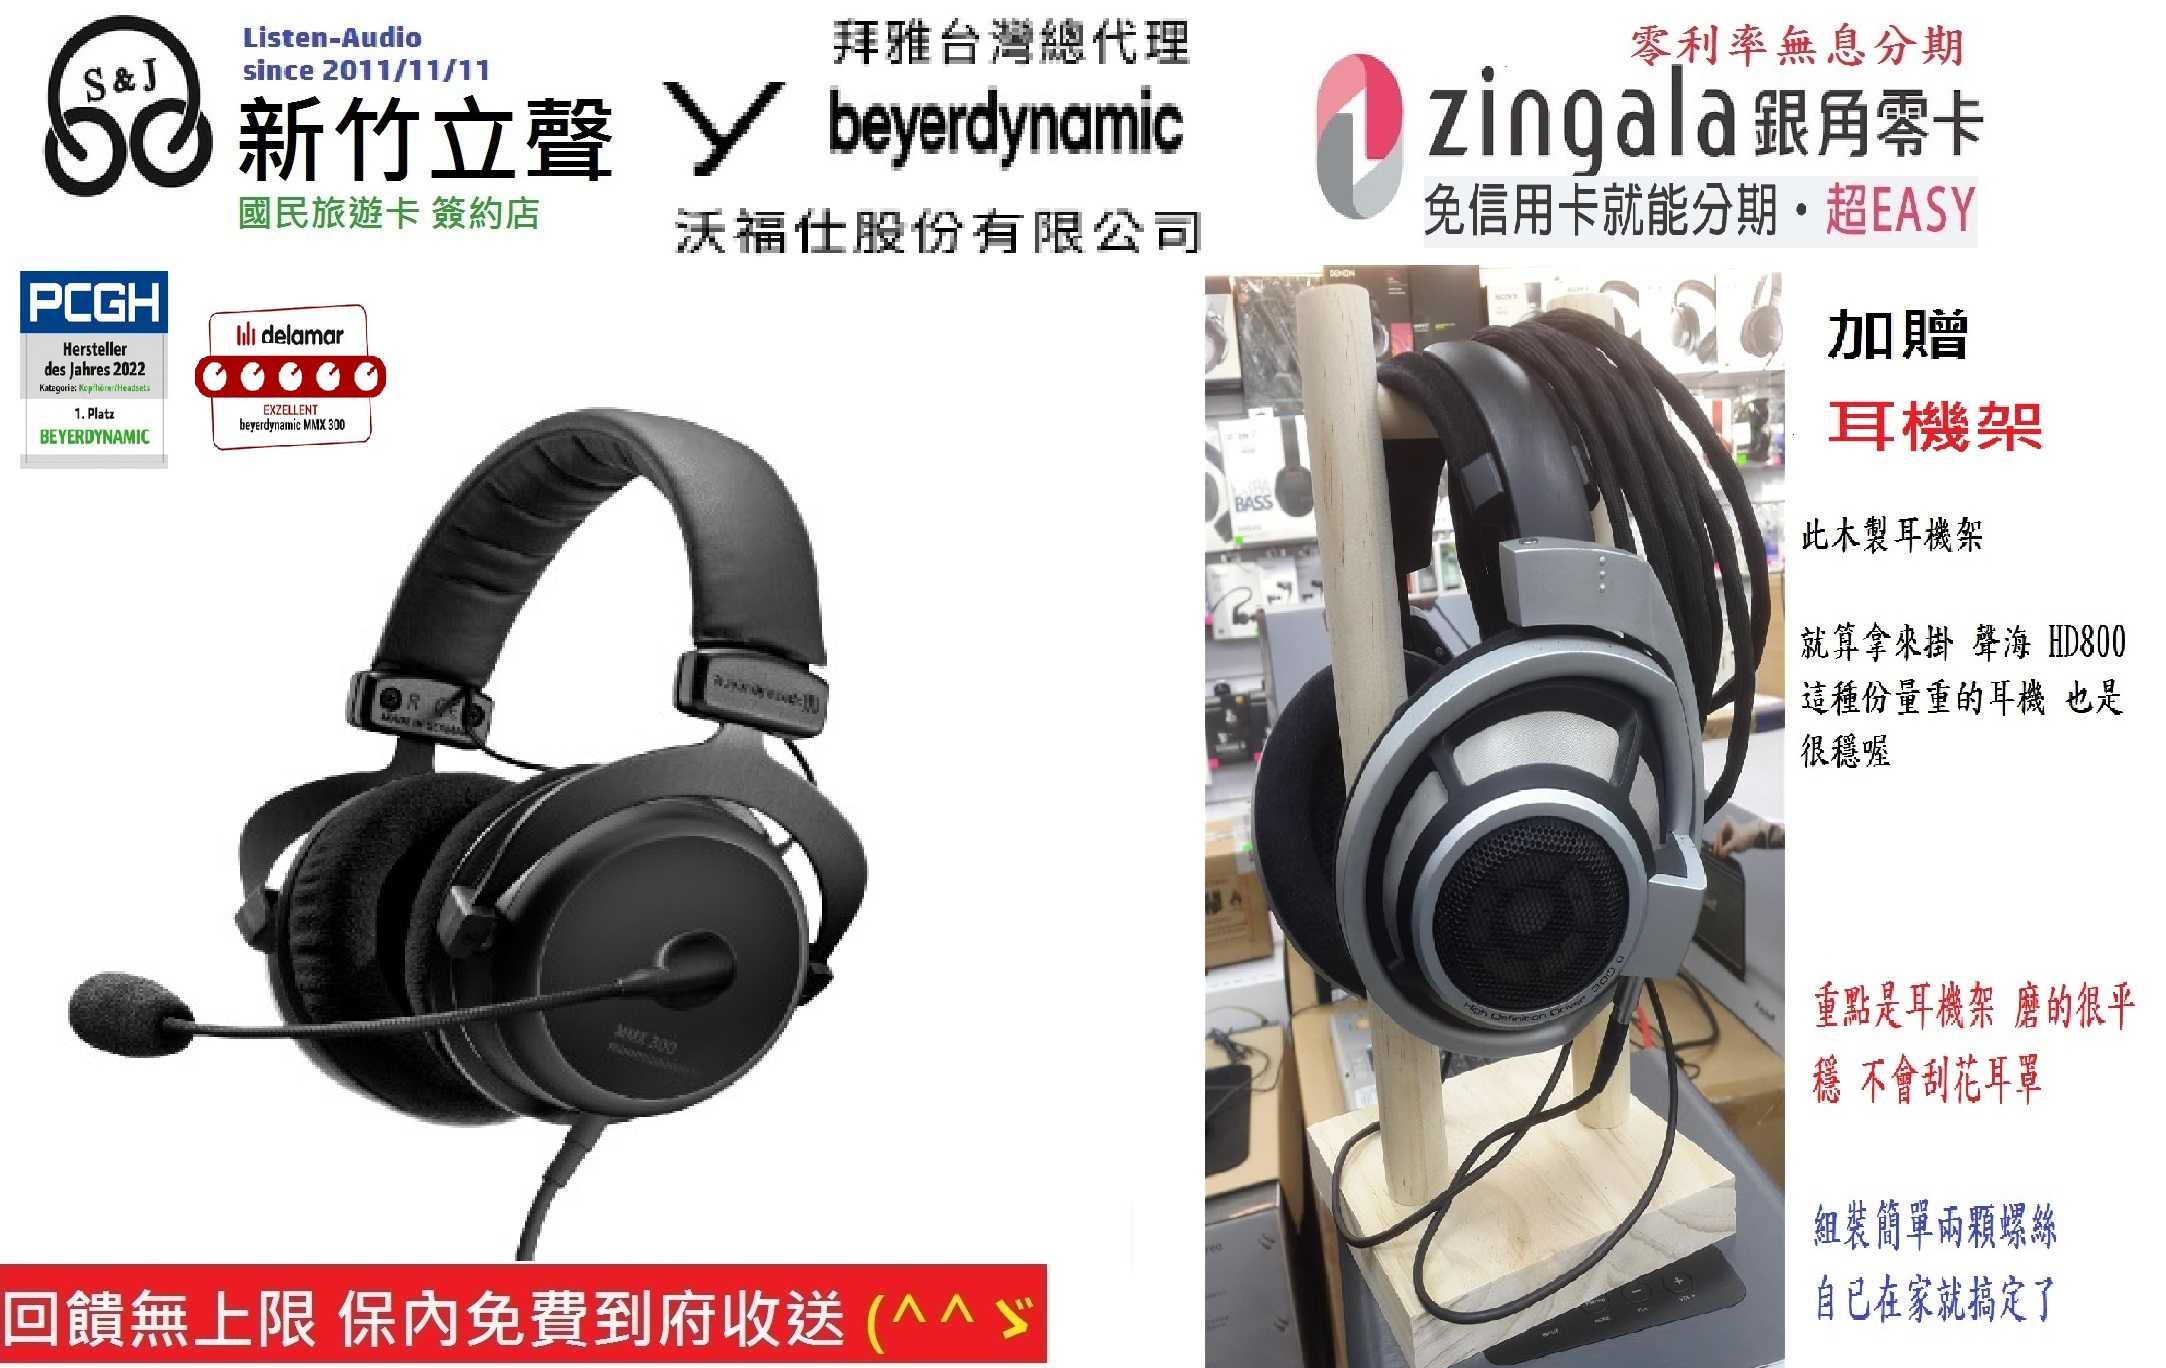 新竹立聲 | Beyerdynamic MMX 300 II 電競耳機 MMX300 II 台灣沃福仕2年保固 贈耳機架